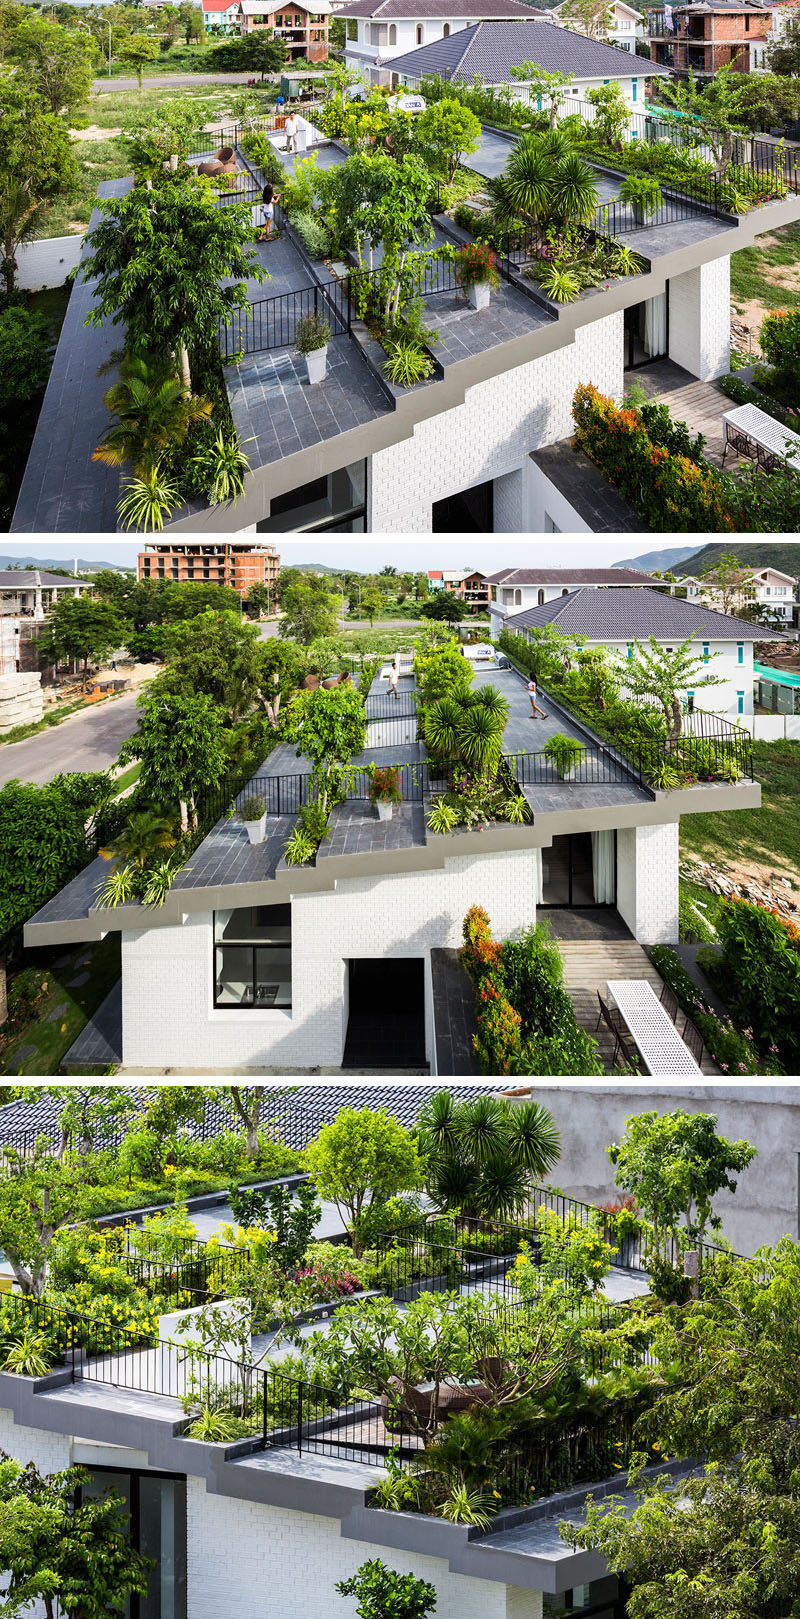 Крыша этого семейного дома была превращена в многоуровневый сад на крыше, чтобы обеспечить достаточно места для развлечений и отдыха.